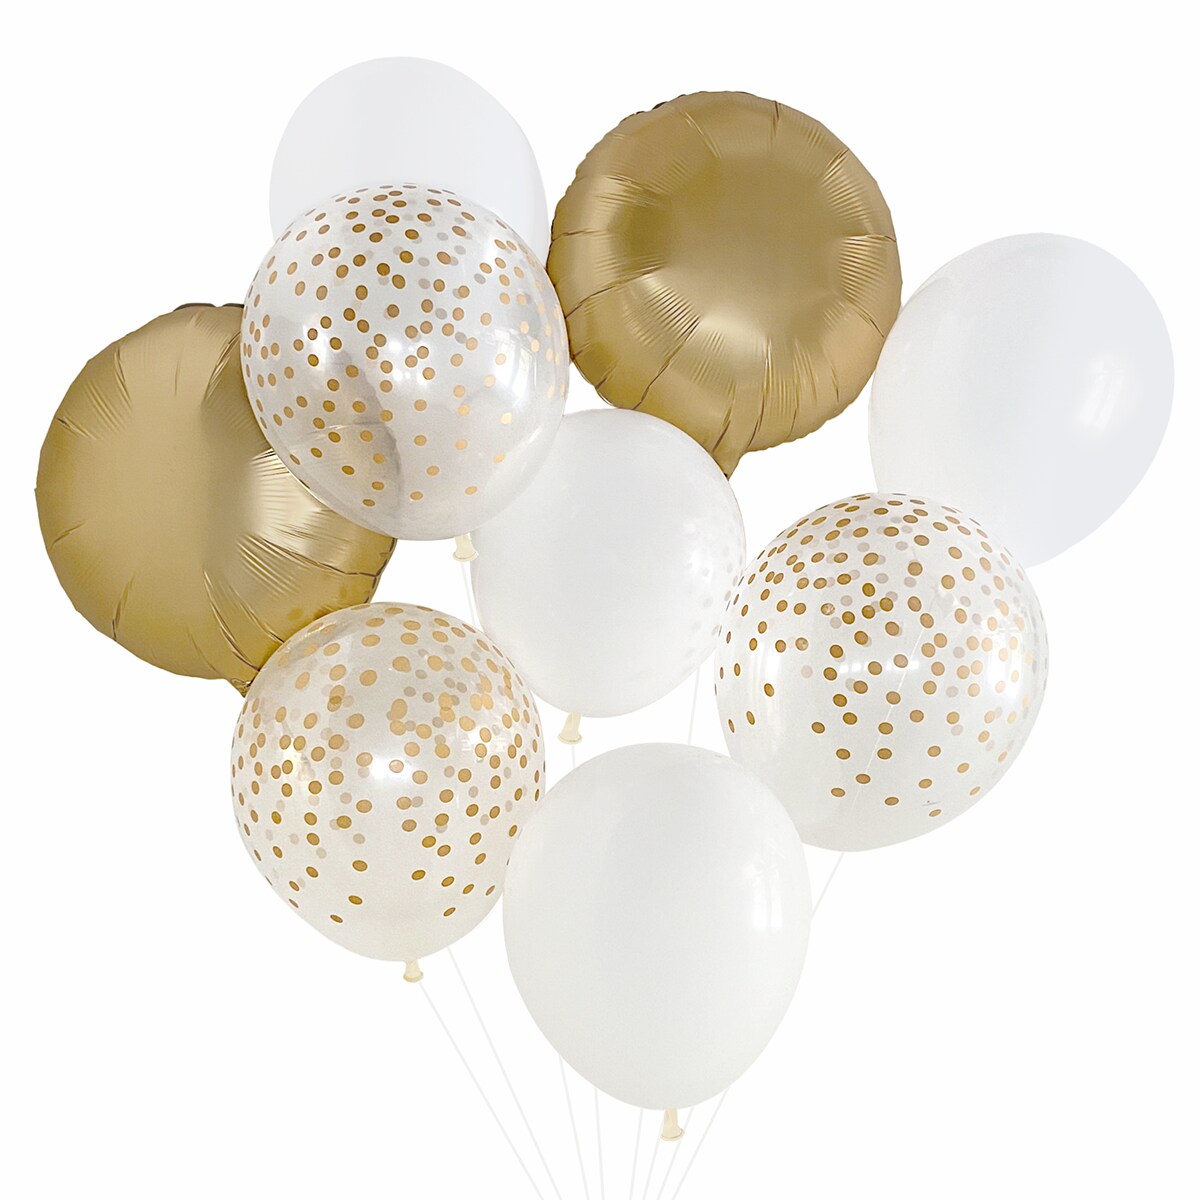 Balloon Bouquet - White &#x26; Gold